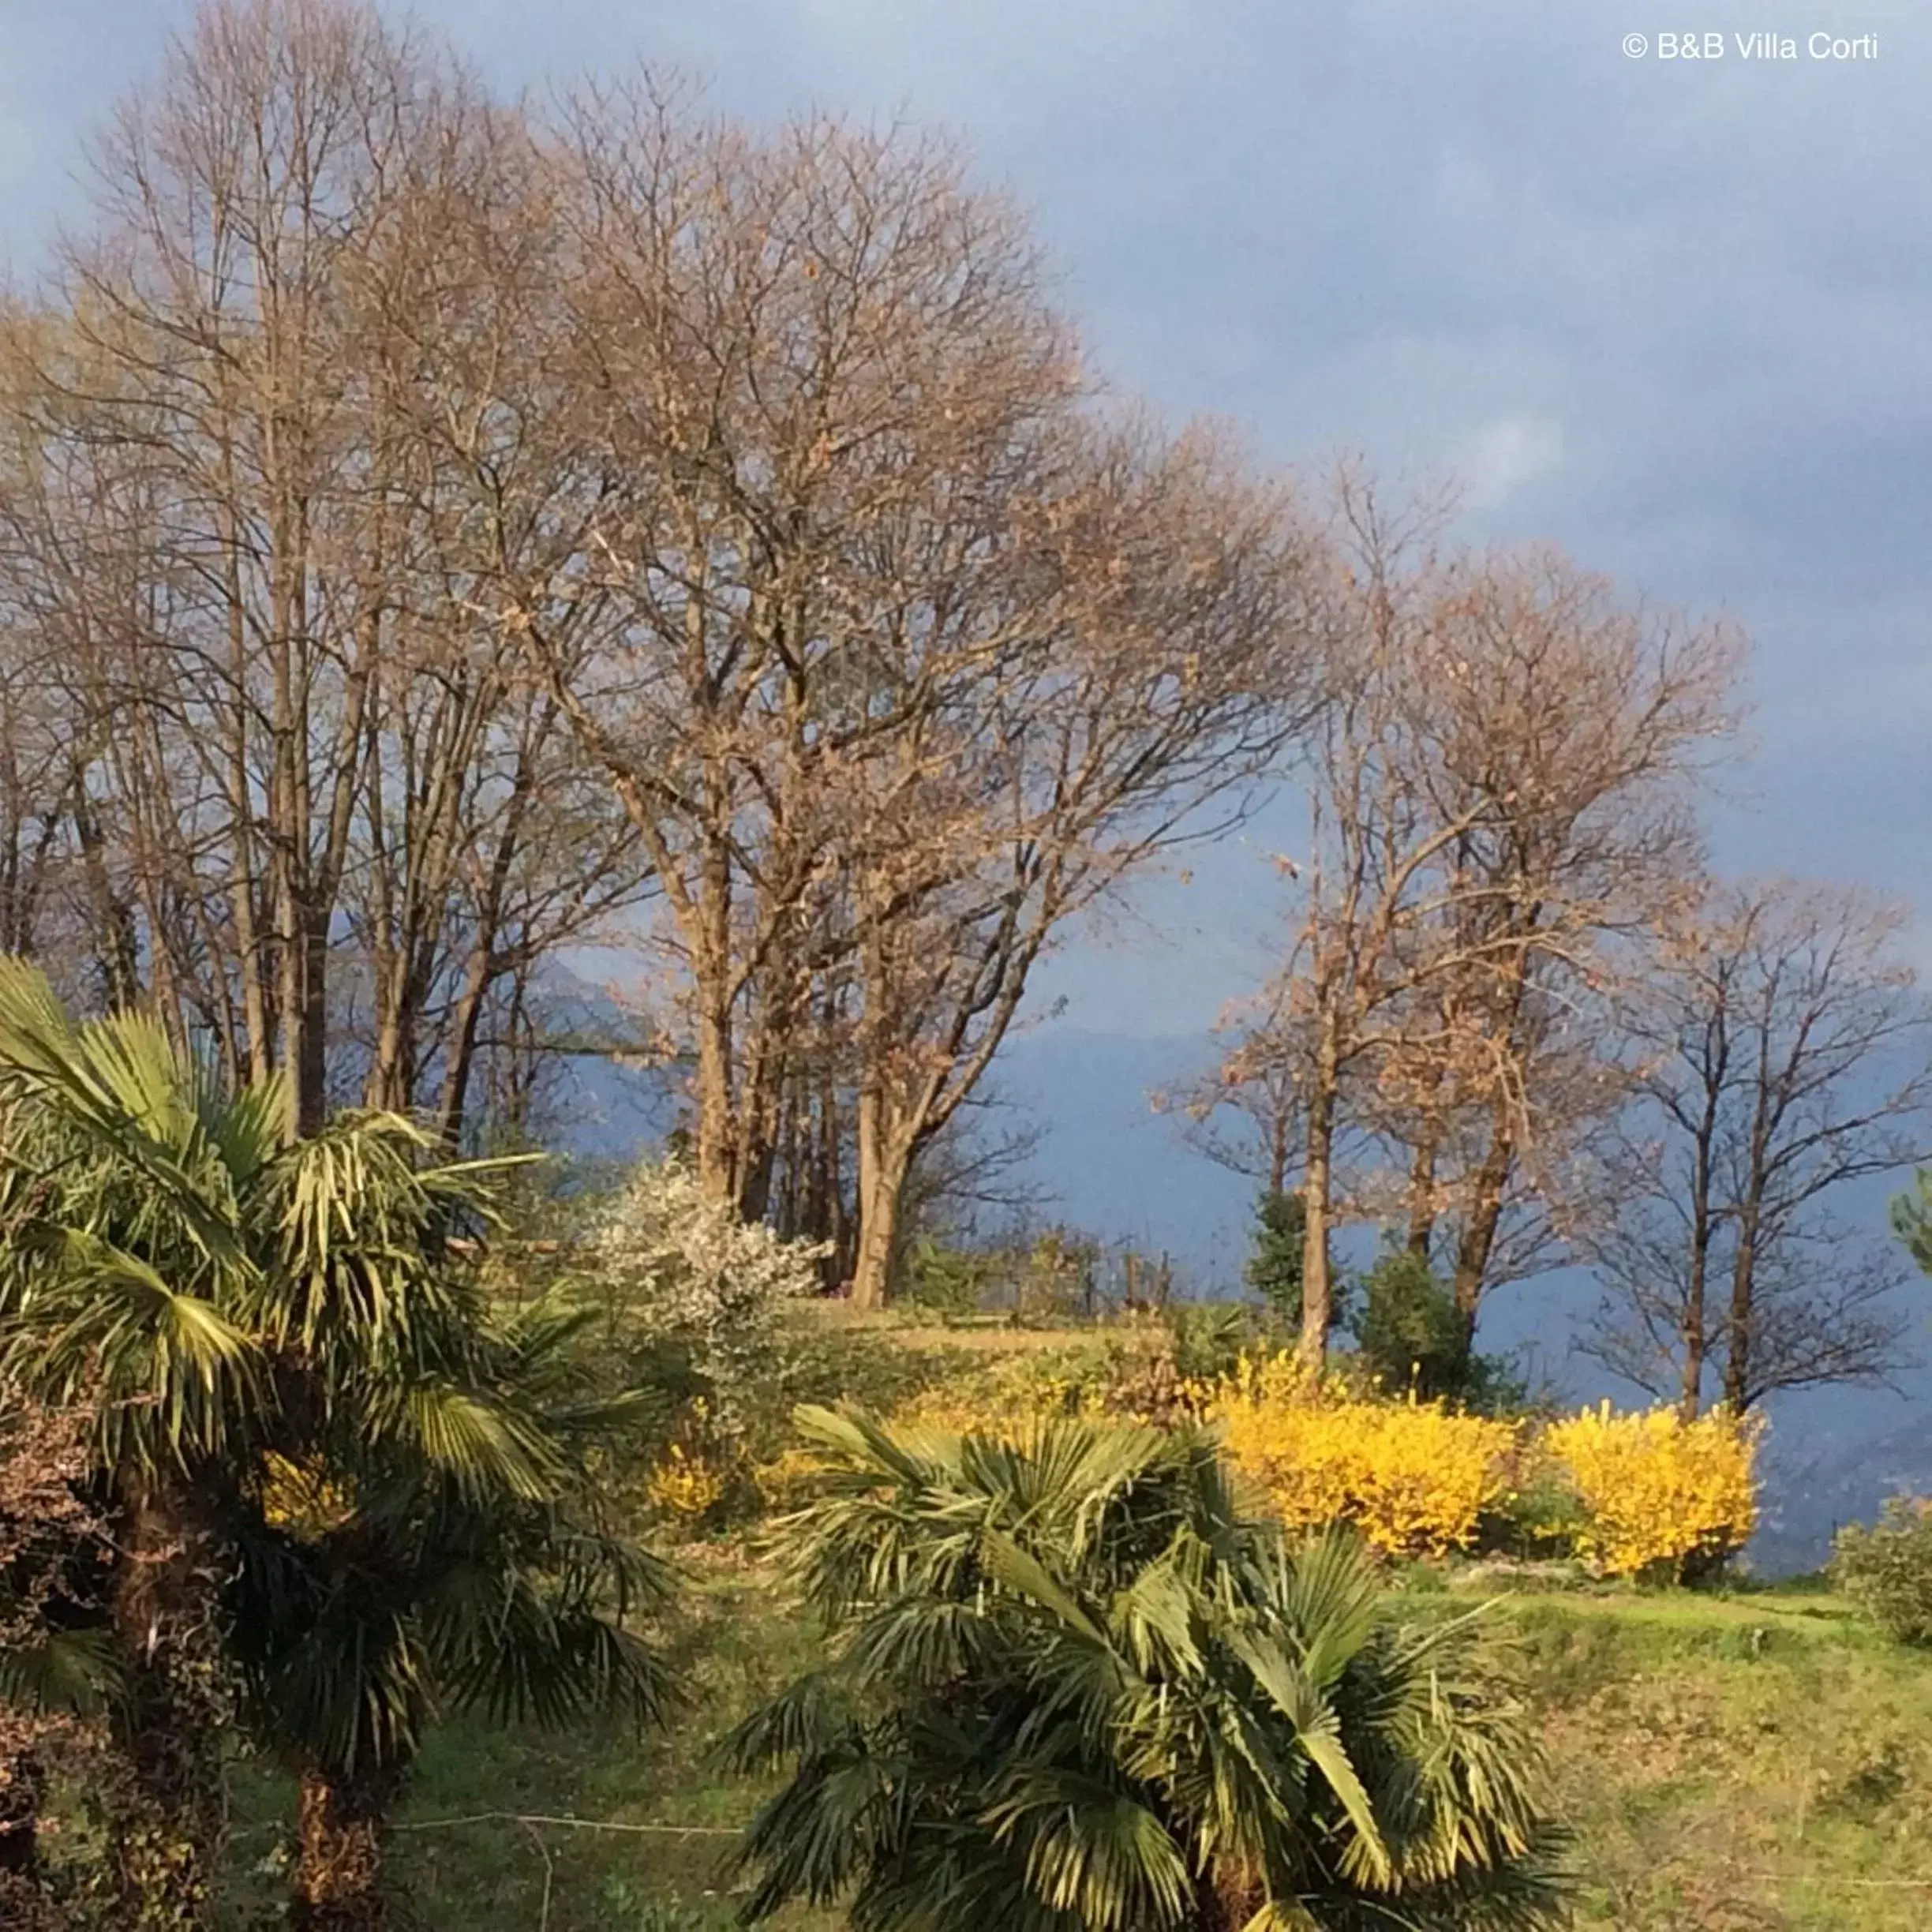 Spring in Villa Corti